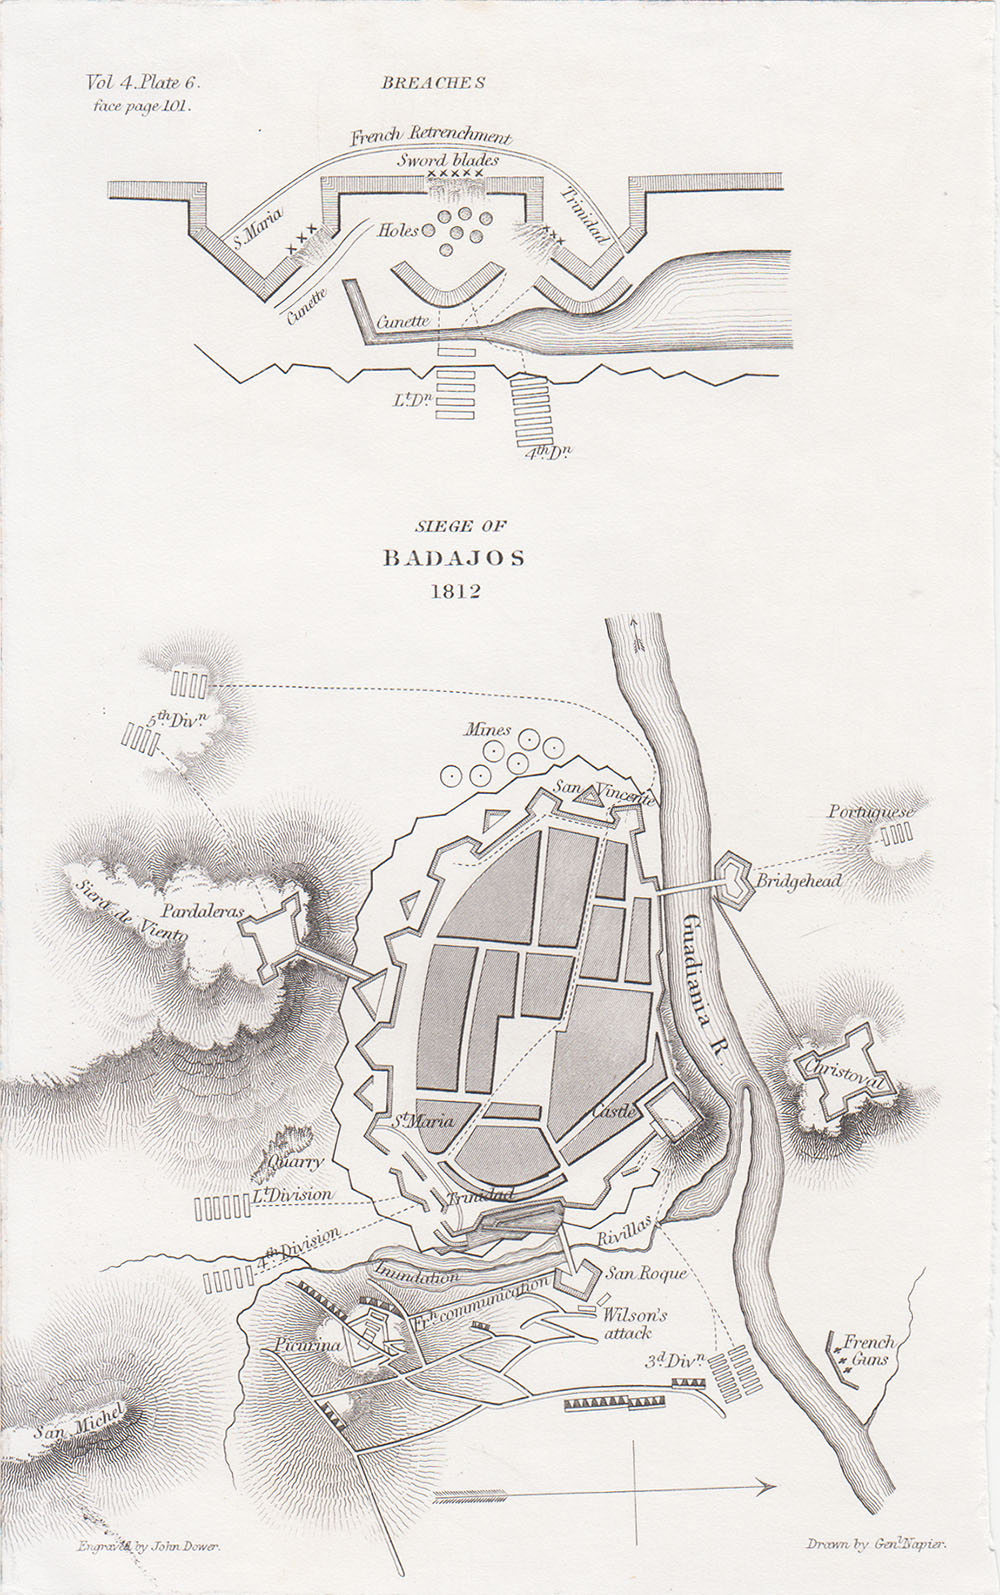 Siege of Badajos